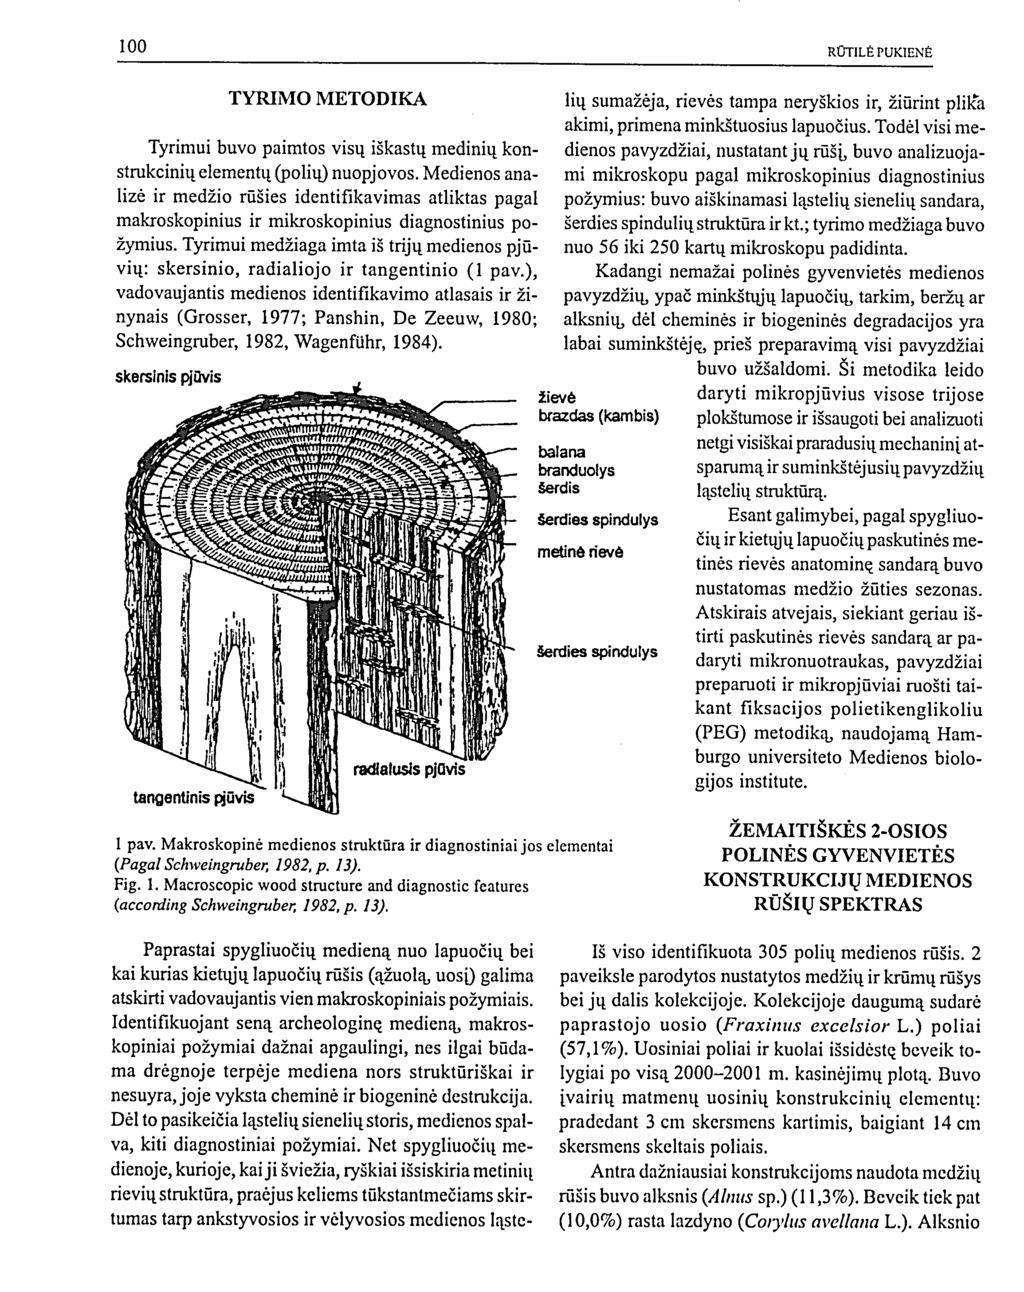 TYRIMO METODIKA Tyrimui buvo paimtos visų iškastų medinių konstrukcinių elementų (polių) nuopjovos.